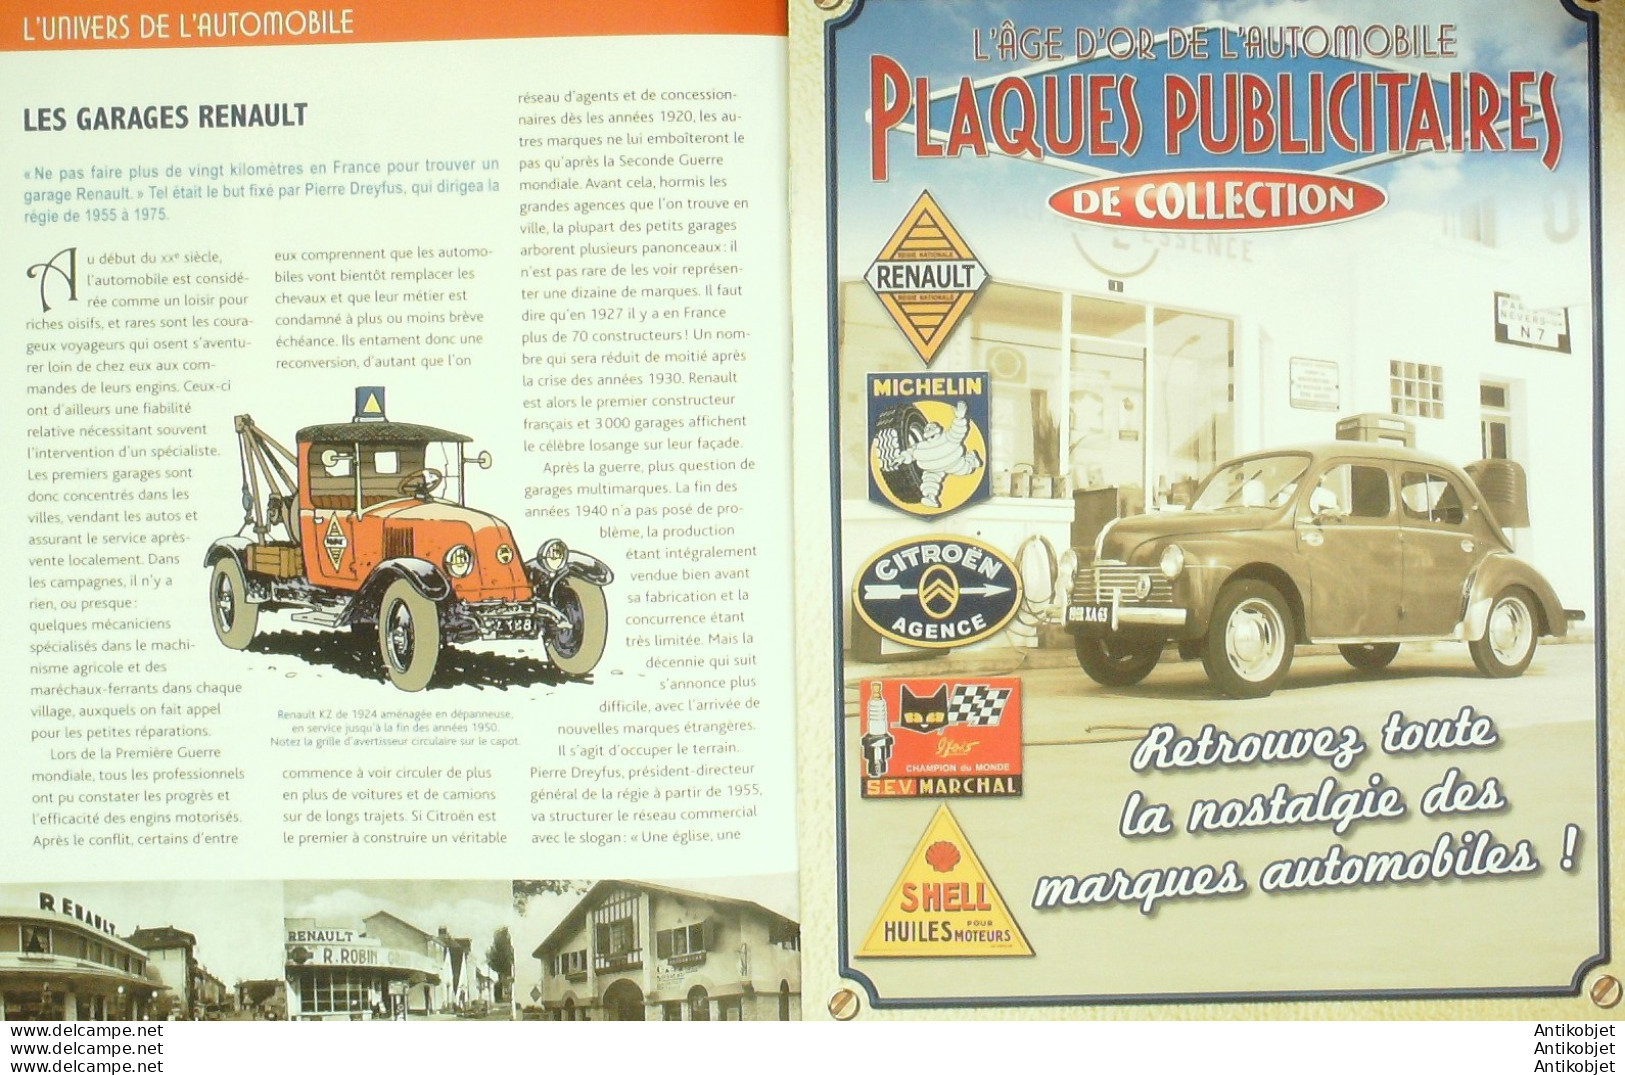 Plaques Publicitaires De Collection édition Hachette - Historia